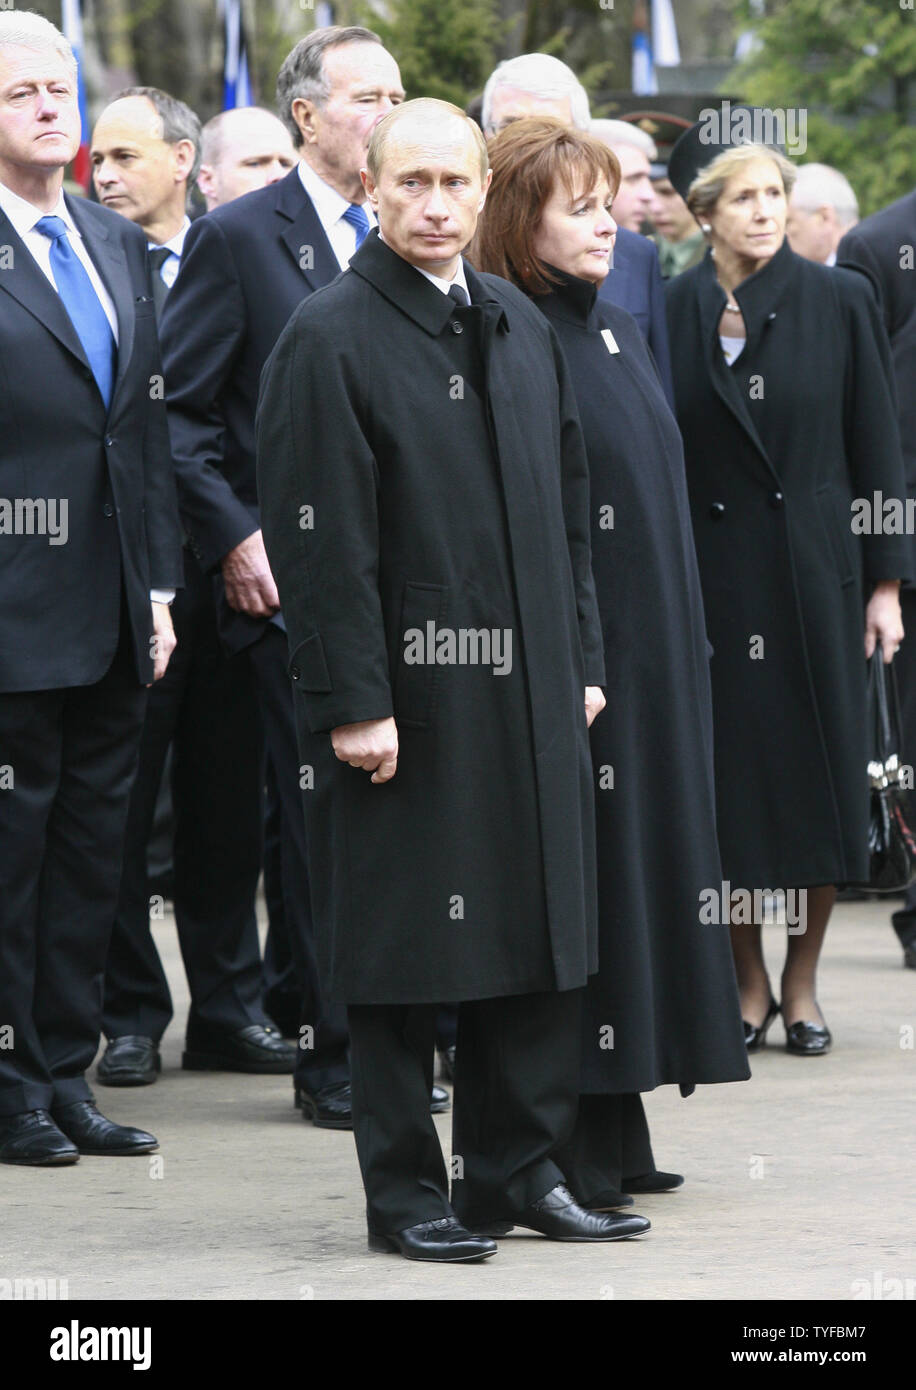 Le président russe Vladimir Poutine (C) avec son épouse Ludmila, l'ex-Présidents Bill Clinton (L) et George H. W. Bush ainsi que des dignitaires et membres de la famille de Boris Eltsine, assister aux funérailles du premier président russe au cimetière Novodievitchi à Moscou le 25 avril 2007. (Photo d'UPI/Anatoli Zhdanov) Banque D'Images